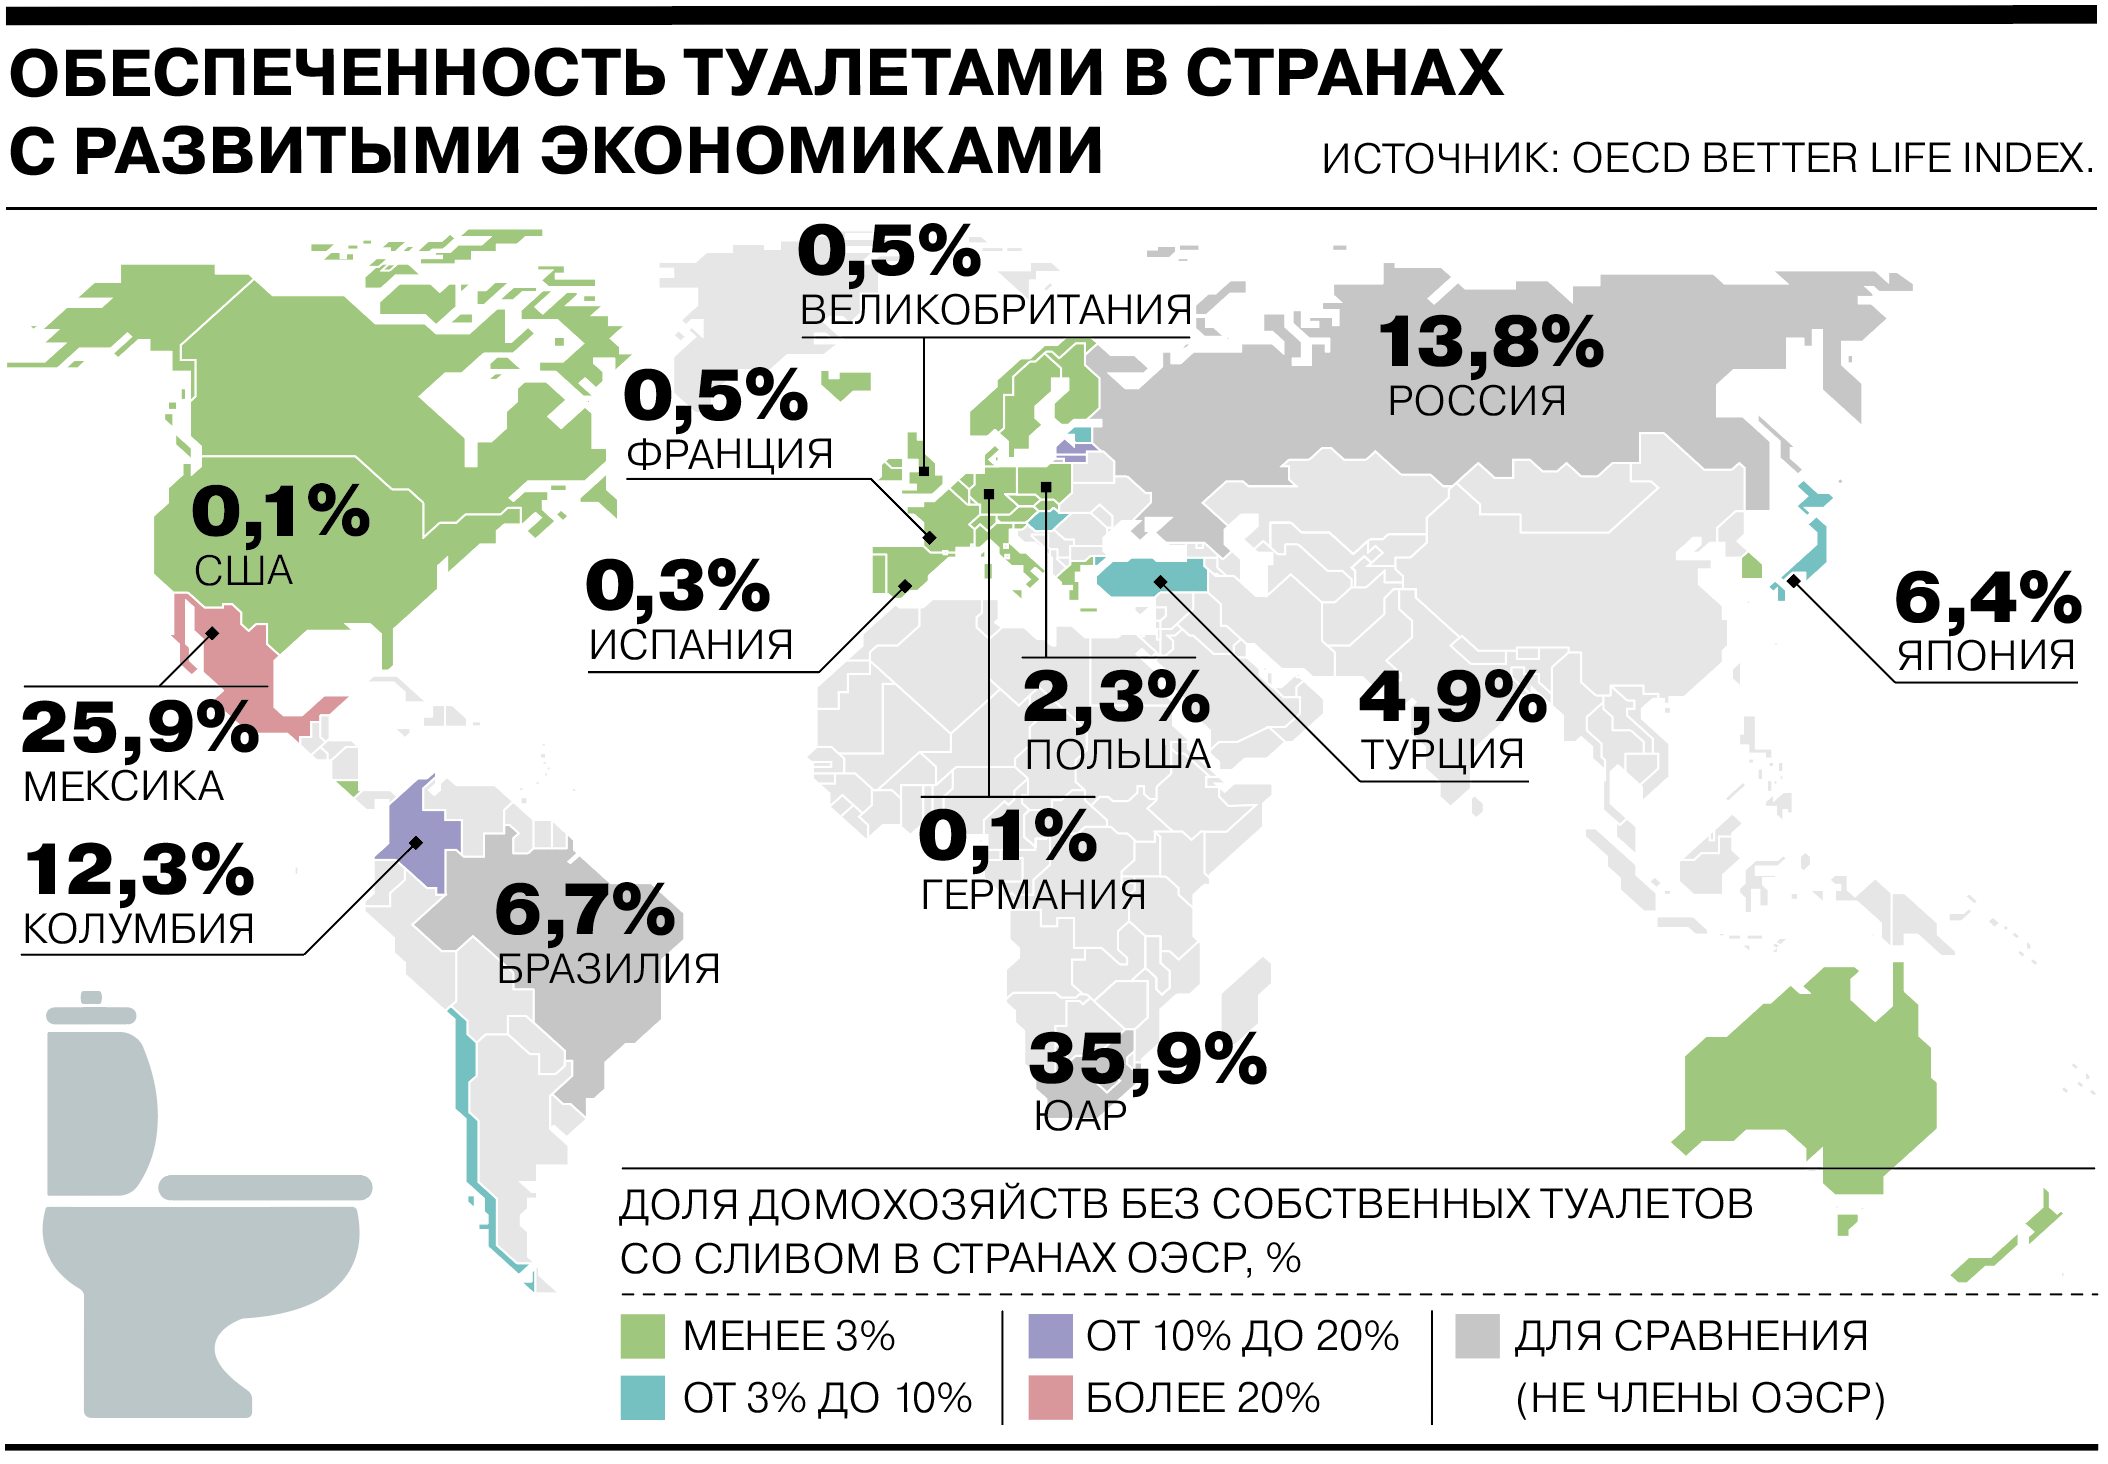 Население россии на 2024 1 января года. Обеспеченность туалетами в мире. Страны с развивающейся экономикой. Туалеты в разных странах.